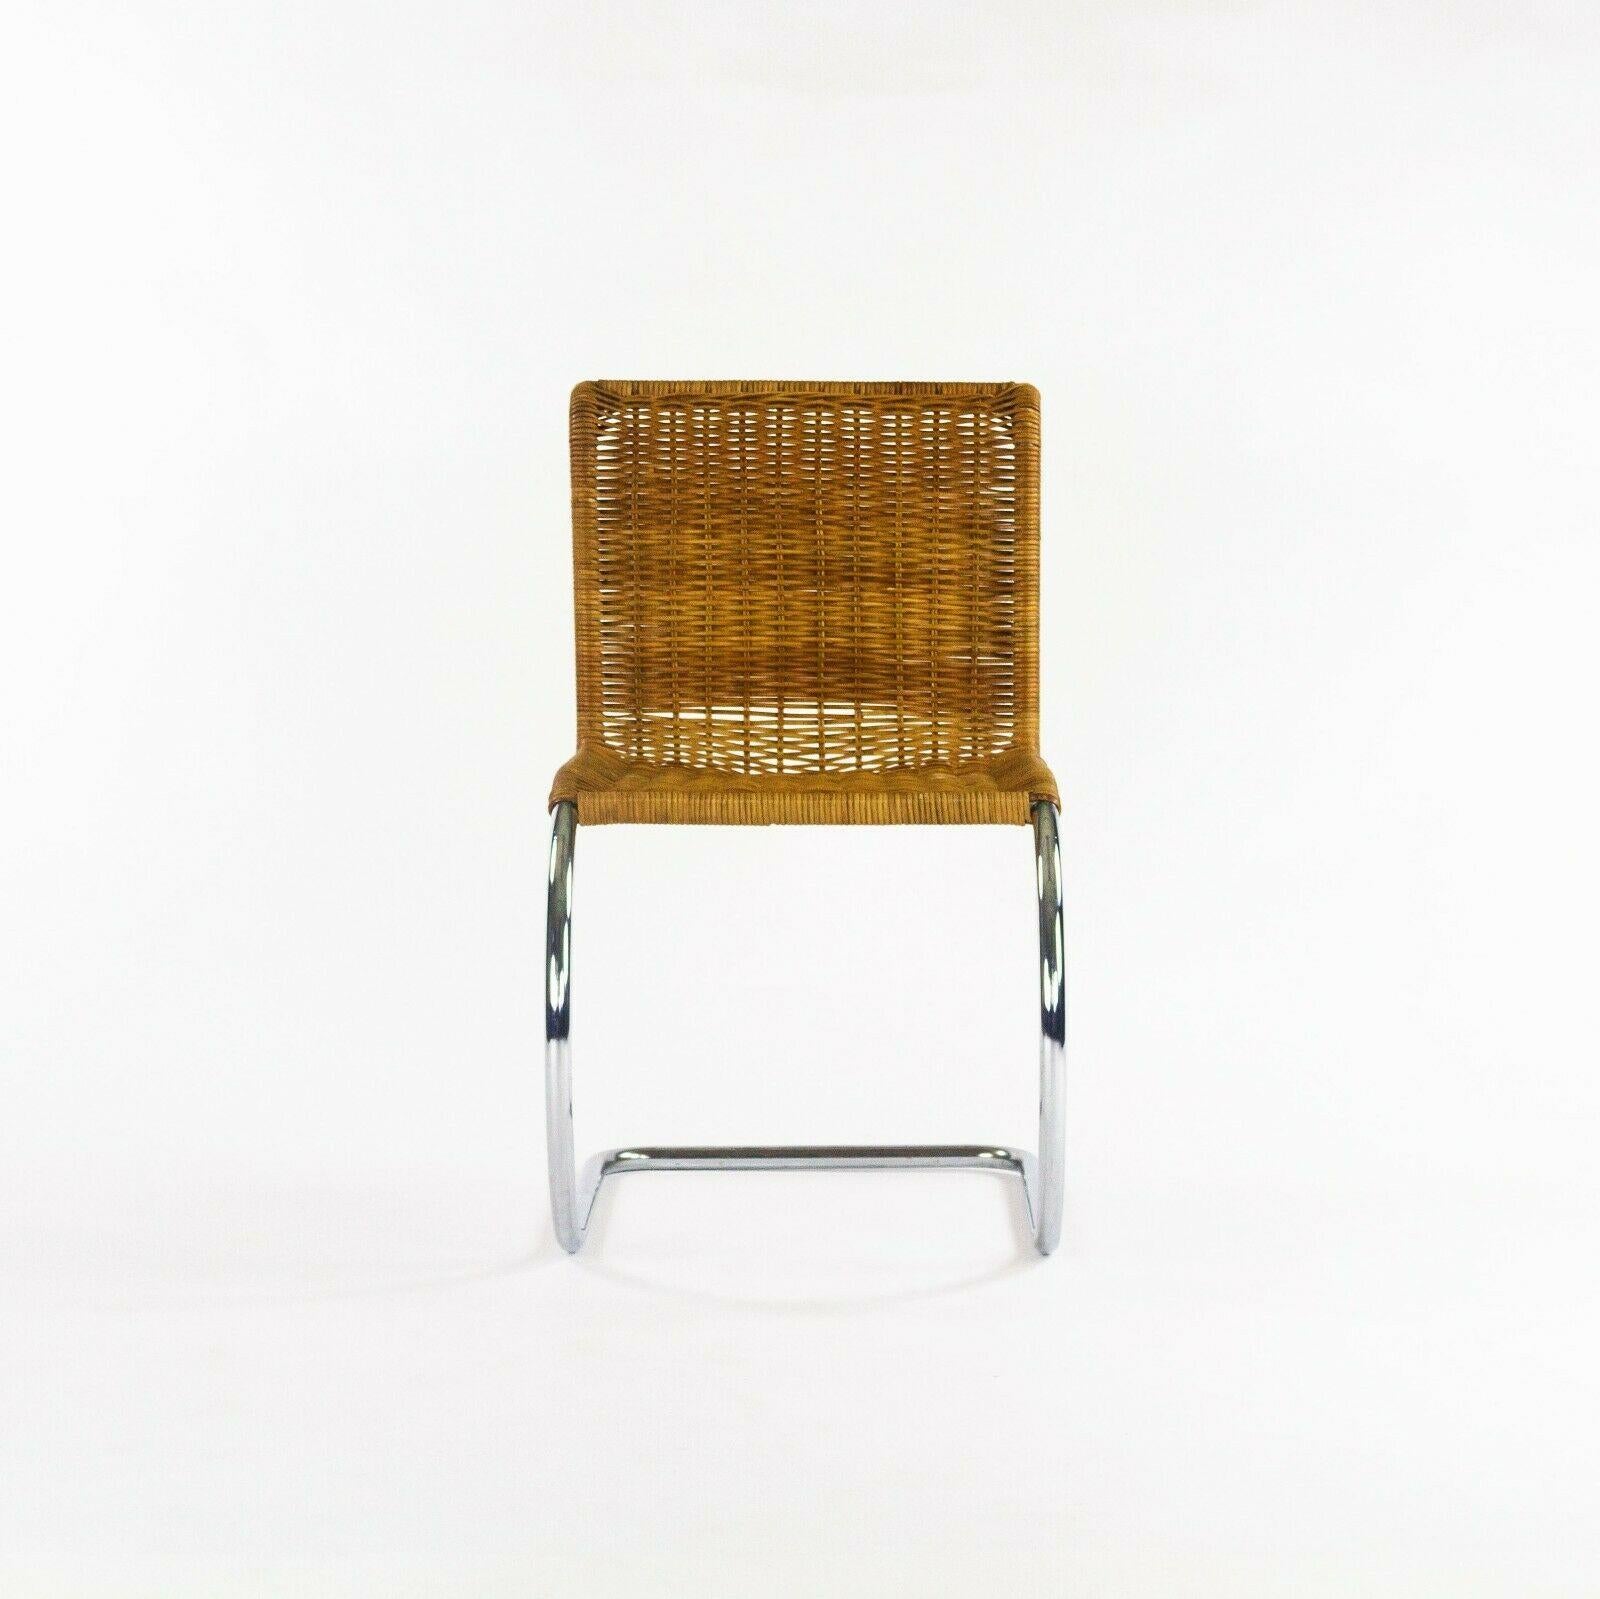 La vente porte sur un ensemble de six chaises MR10 des années 1970, conçues par Mies Van Der Rohe et produites par Knoll International. Il s'agit de magnifiques exemplaires originaux, qui conservent encore leurs sièges en rotin d'origine. Ils sont